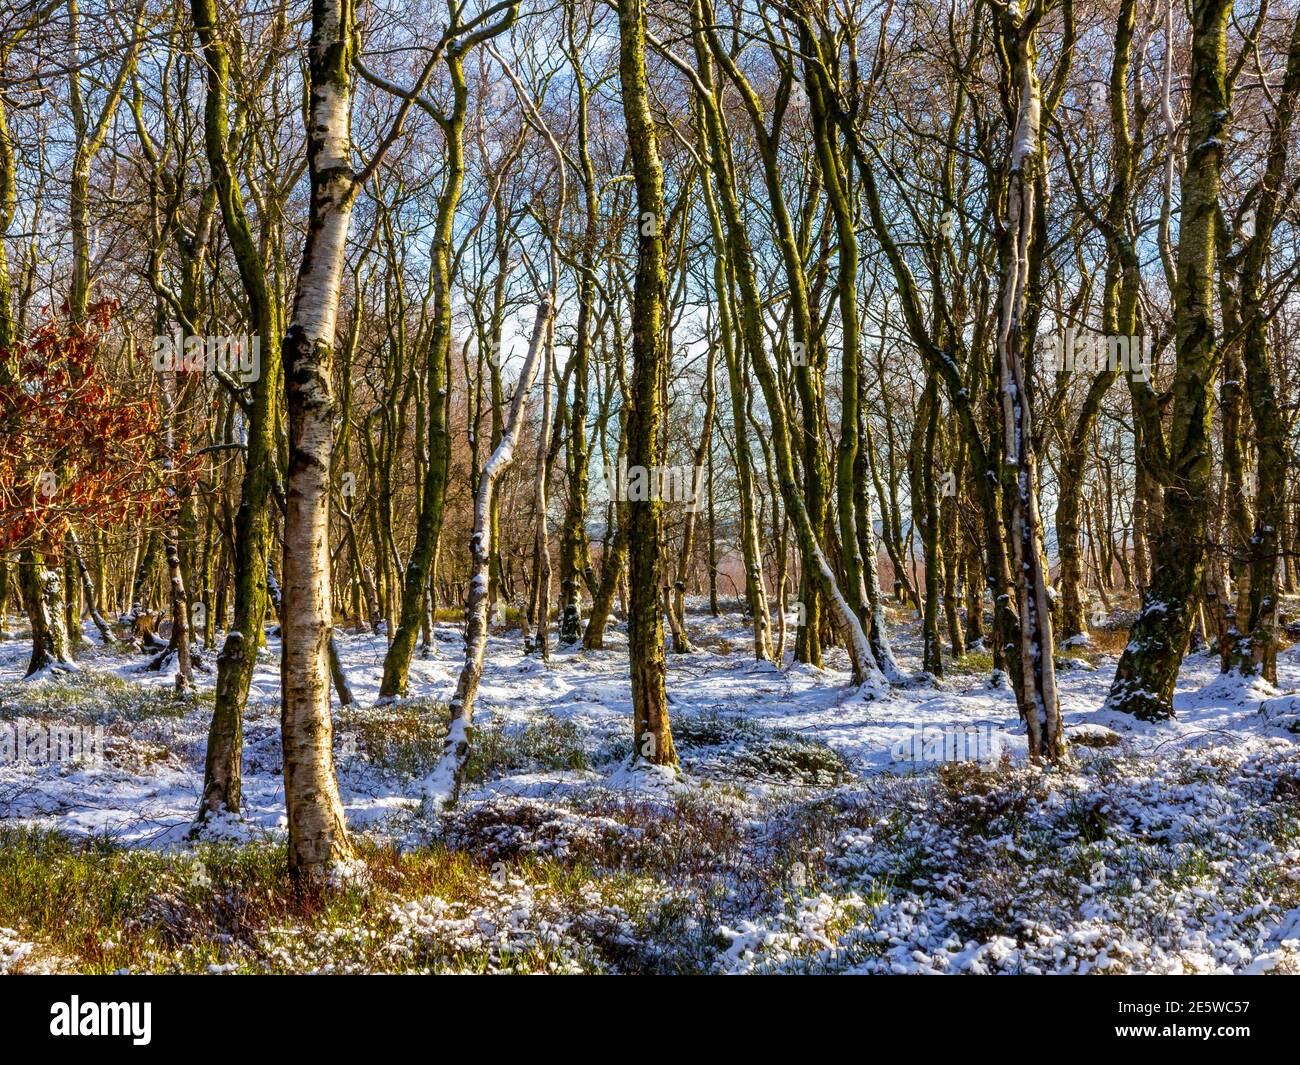 Vista invernale con alberi di betulla argentata a Stanton Moor vicino Bakewell nel Peak District National Park Derbyshire Inghilterra Regno Unito Foto Stock